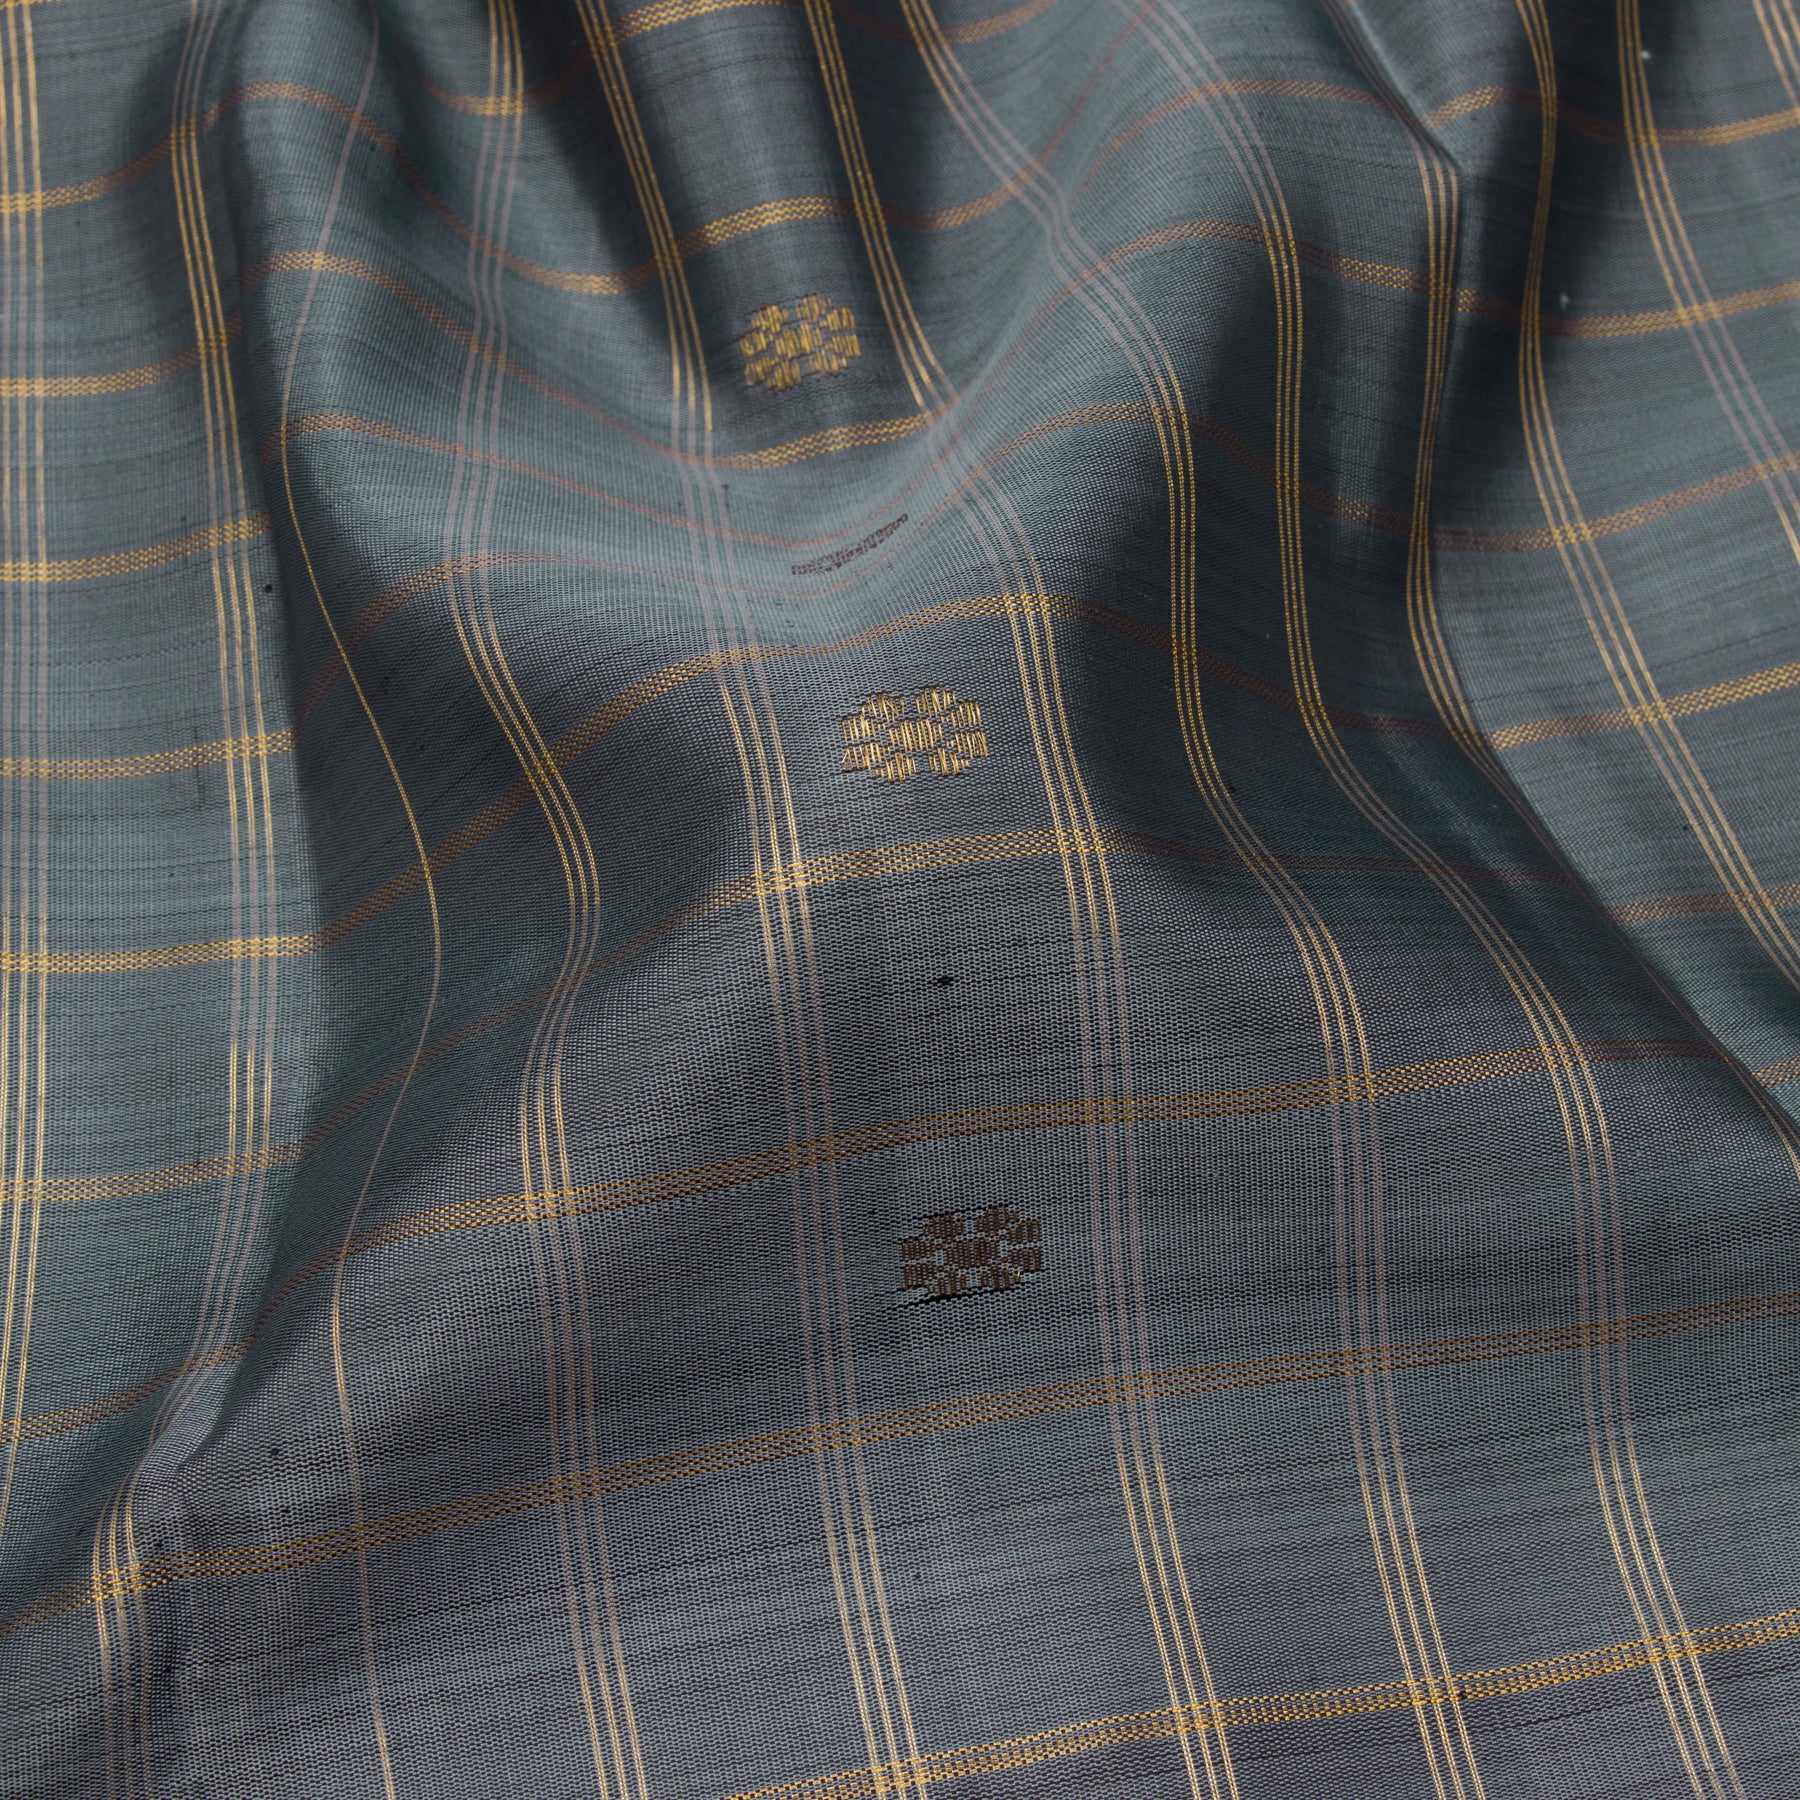 Kanakavalli Kanjivaram Silk Sari 23-040-HS001-14075 - Fabric View